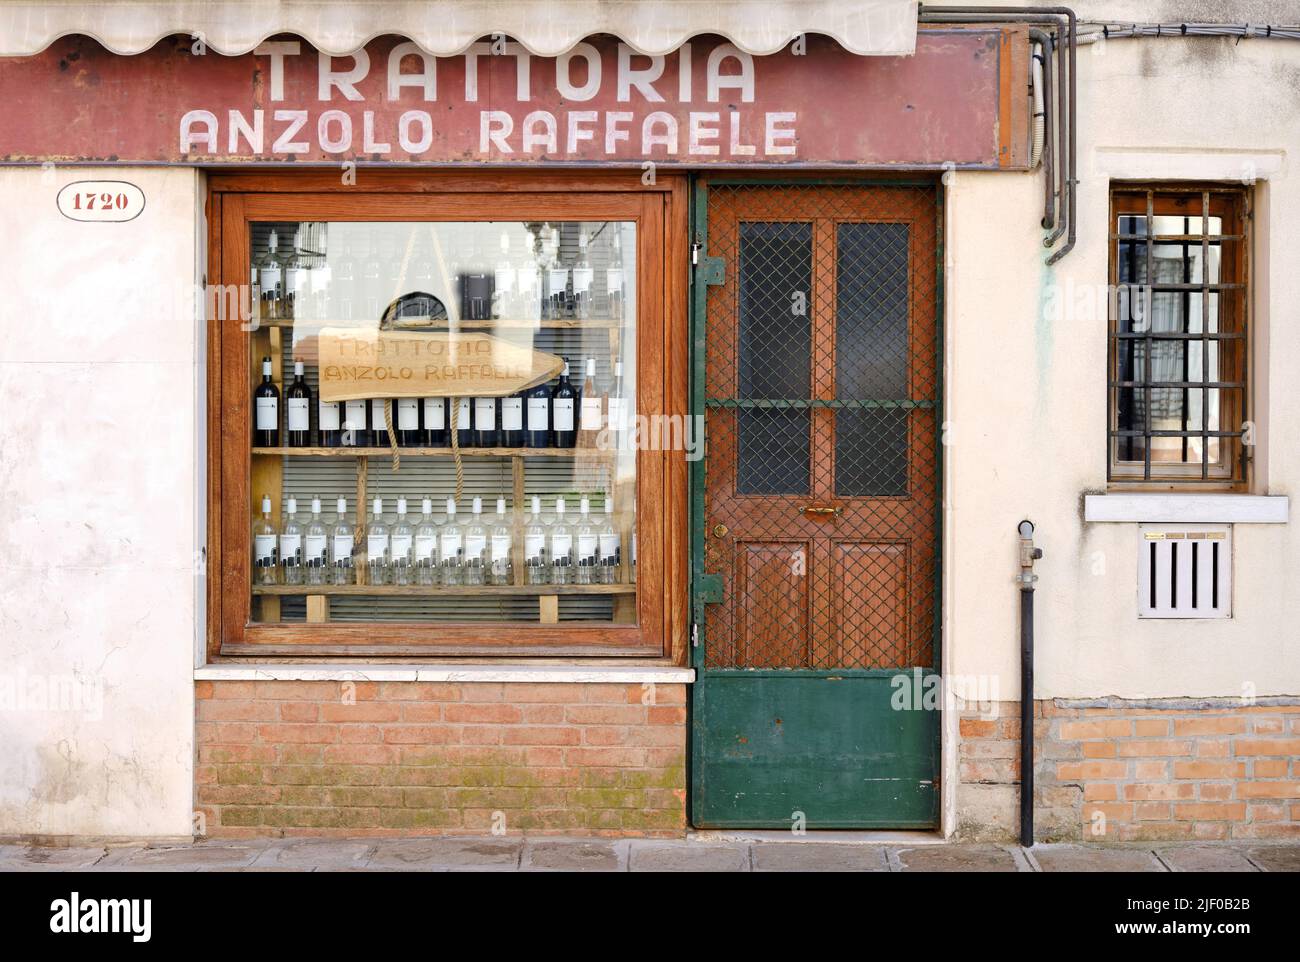 Vista frontale dell'ingresso dell'antica trattoria italiana tradizionale di Venezia Foto Stock